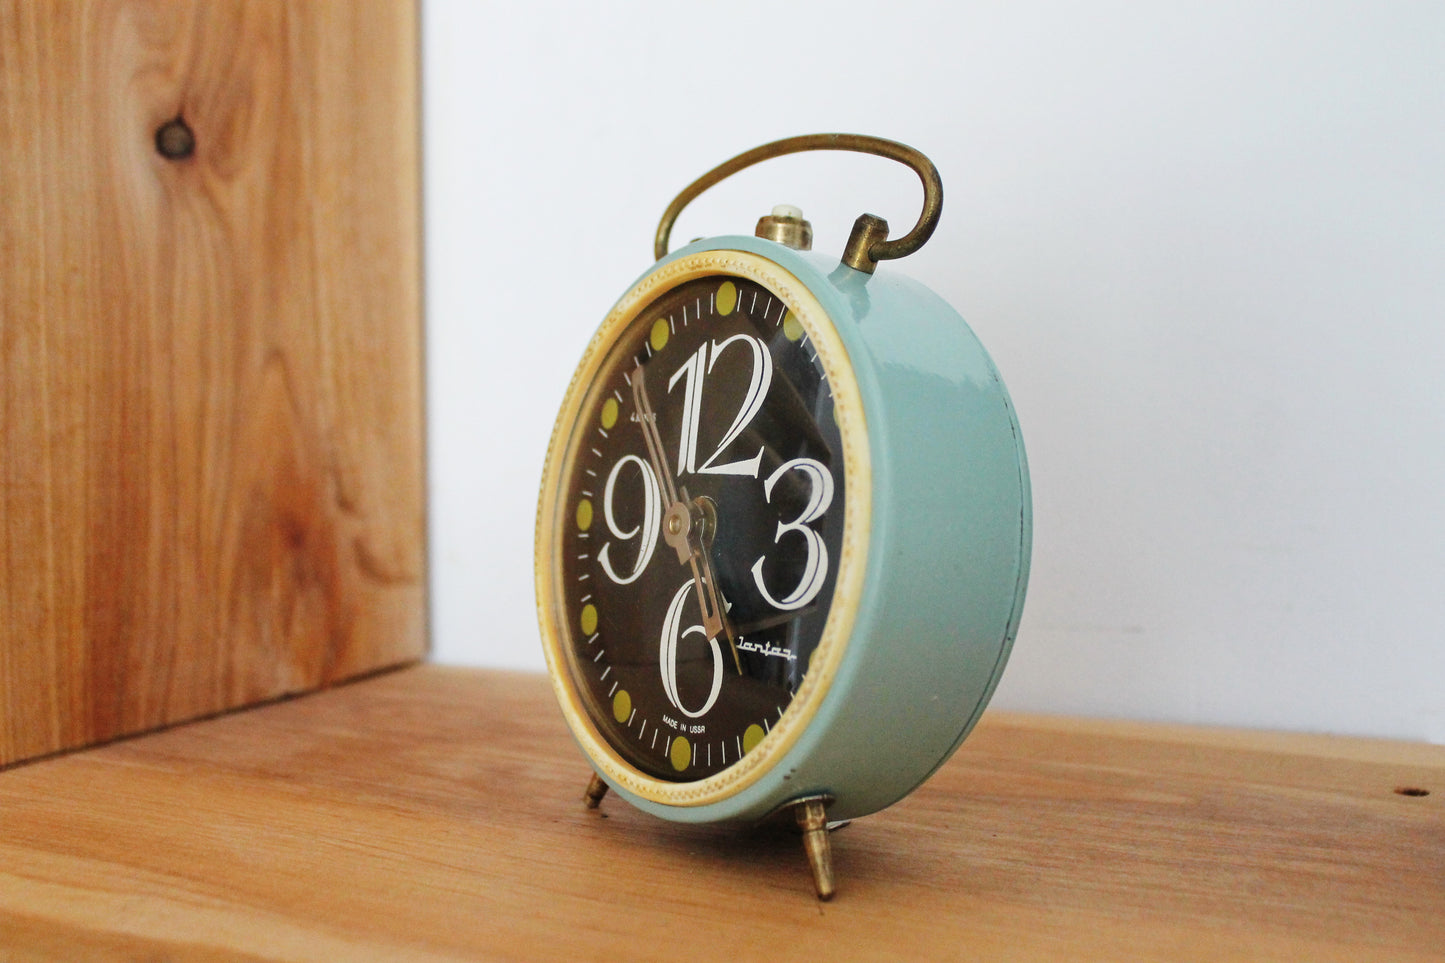 Shabby chic Jantar Alarm clock - Soviet clock 'Jantar' - Made in USSR - Vintage Alarm Clock - Working